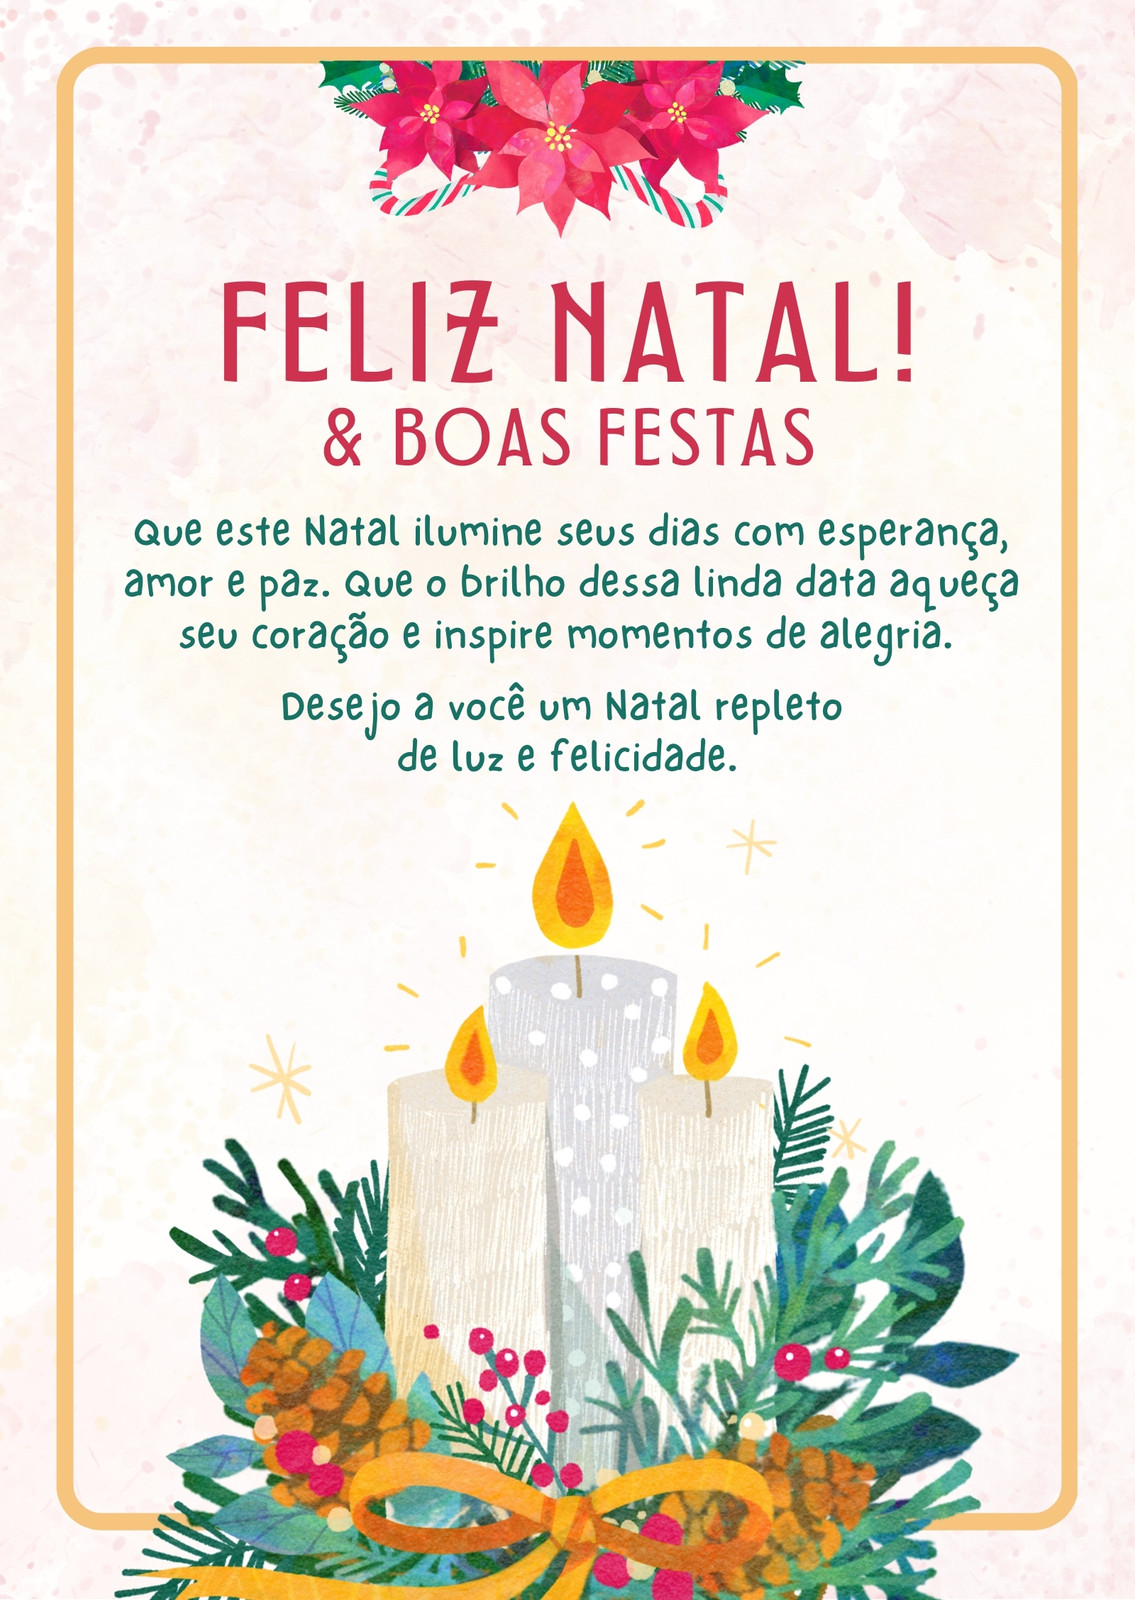 Feliz natal ilustração em português brasileiro com luzes de natal e